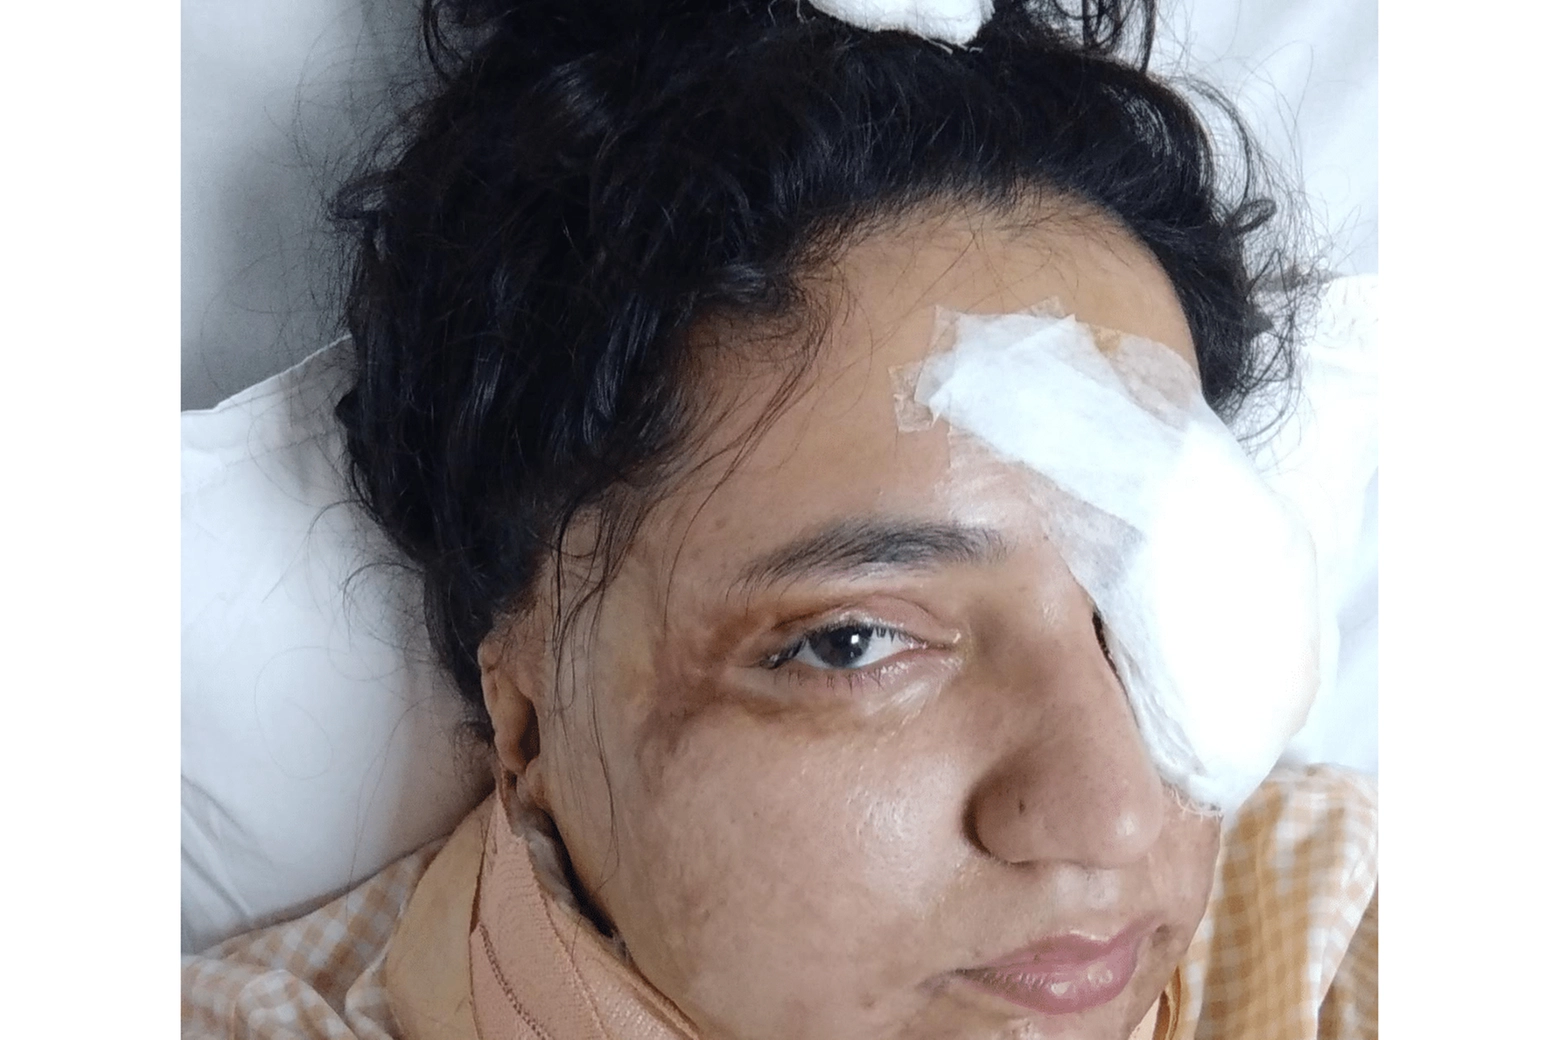 La vittima di violenza con l'acido in India